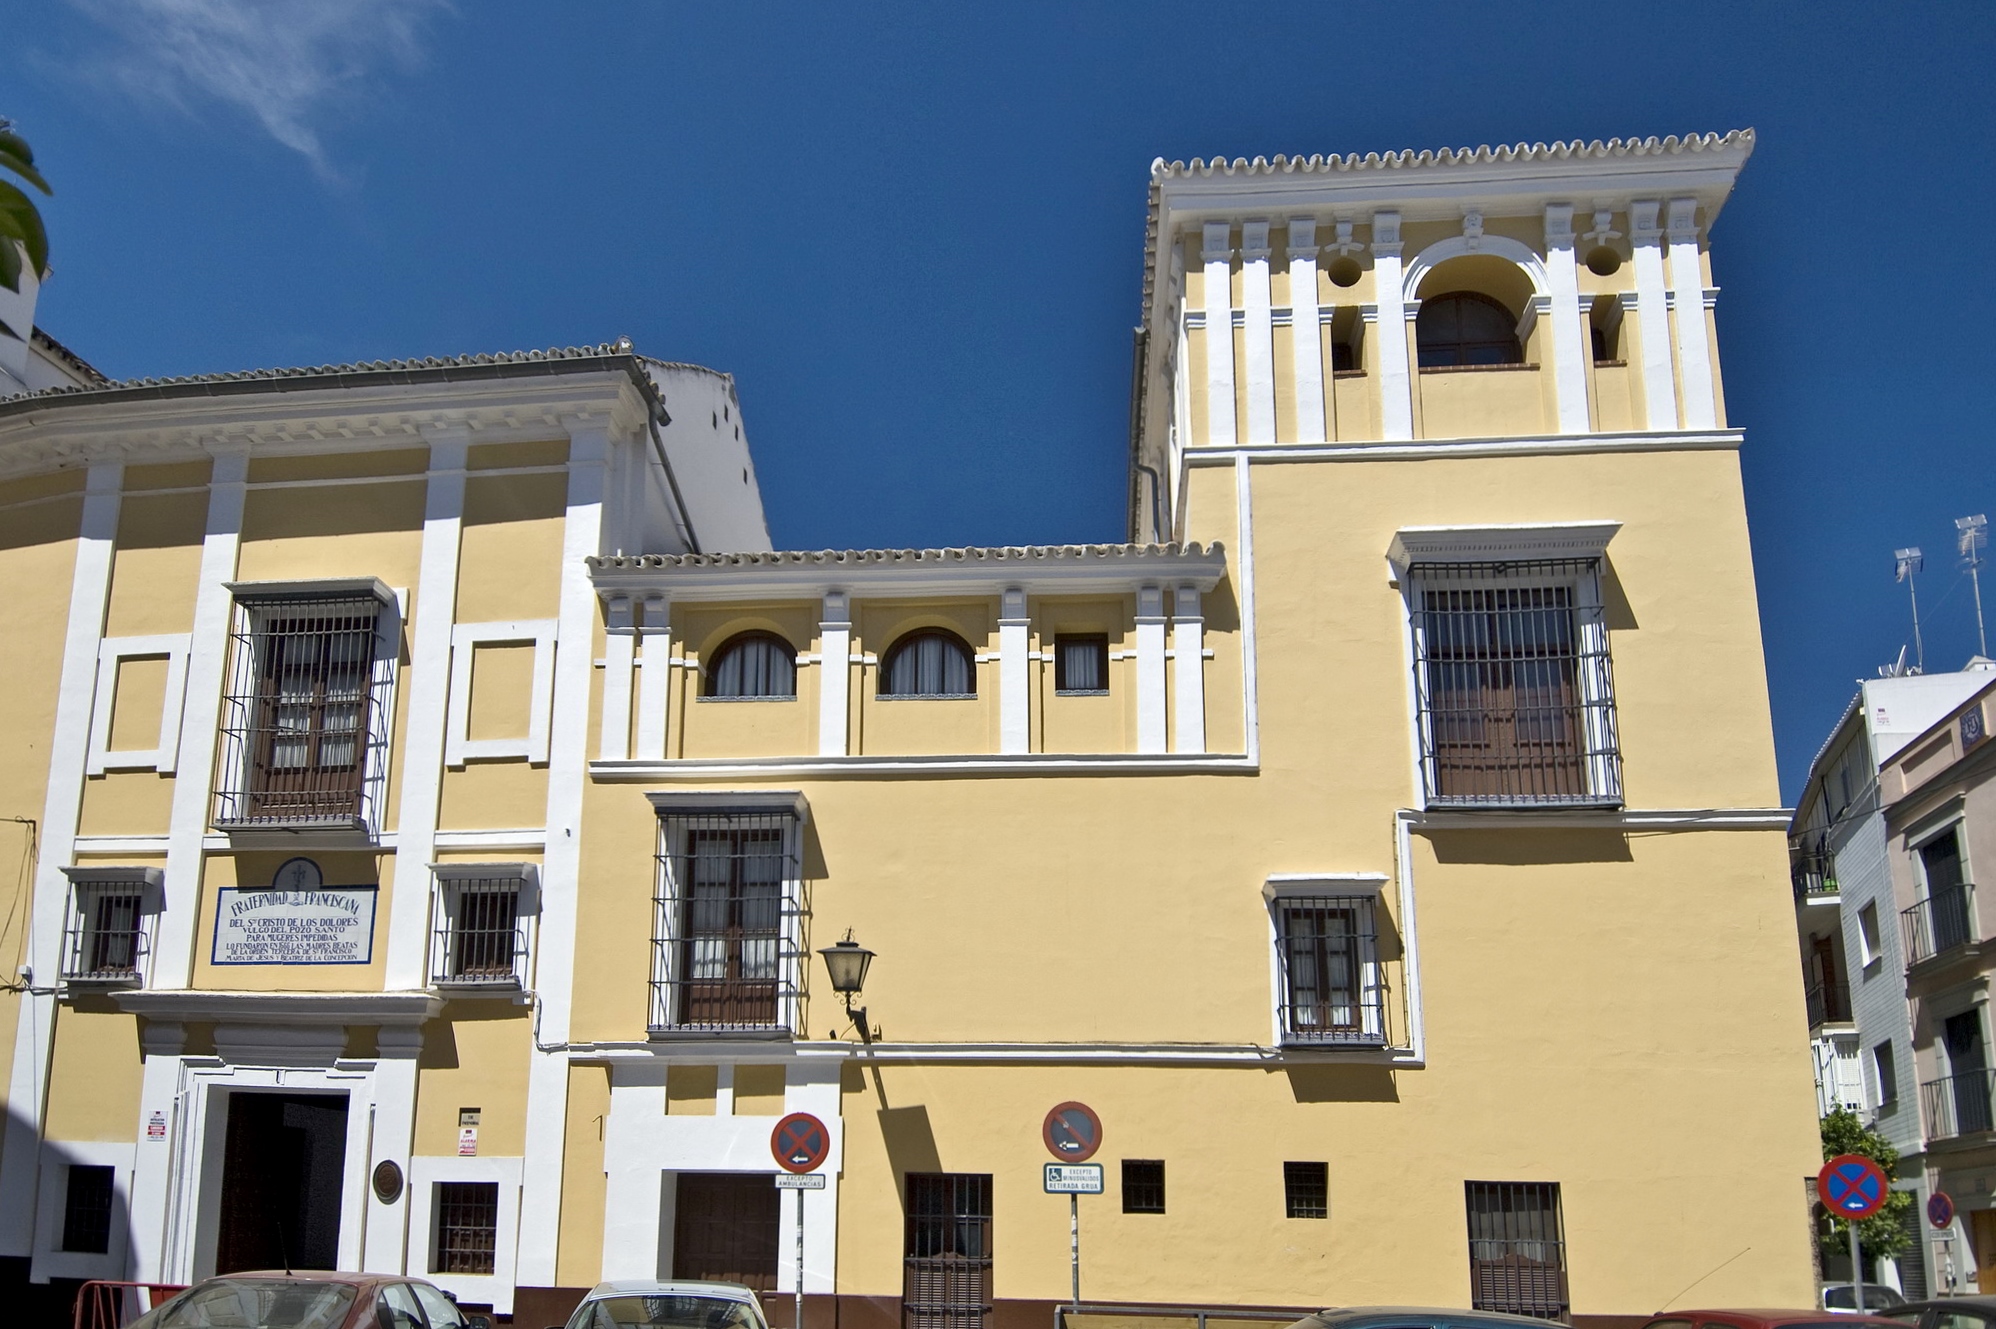 La plaza y el hospital del Pozo Santo | La magia de Sevilla